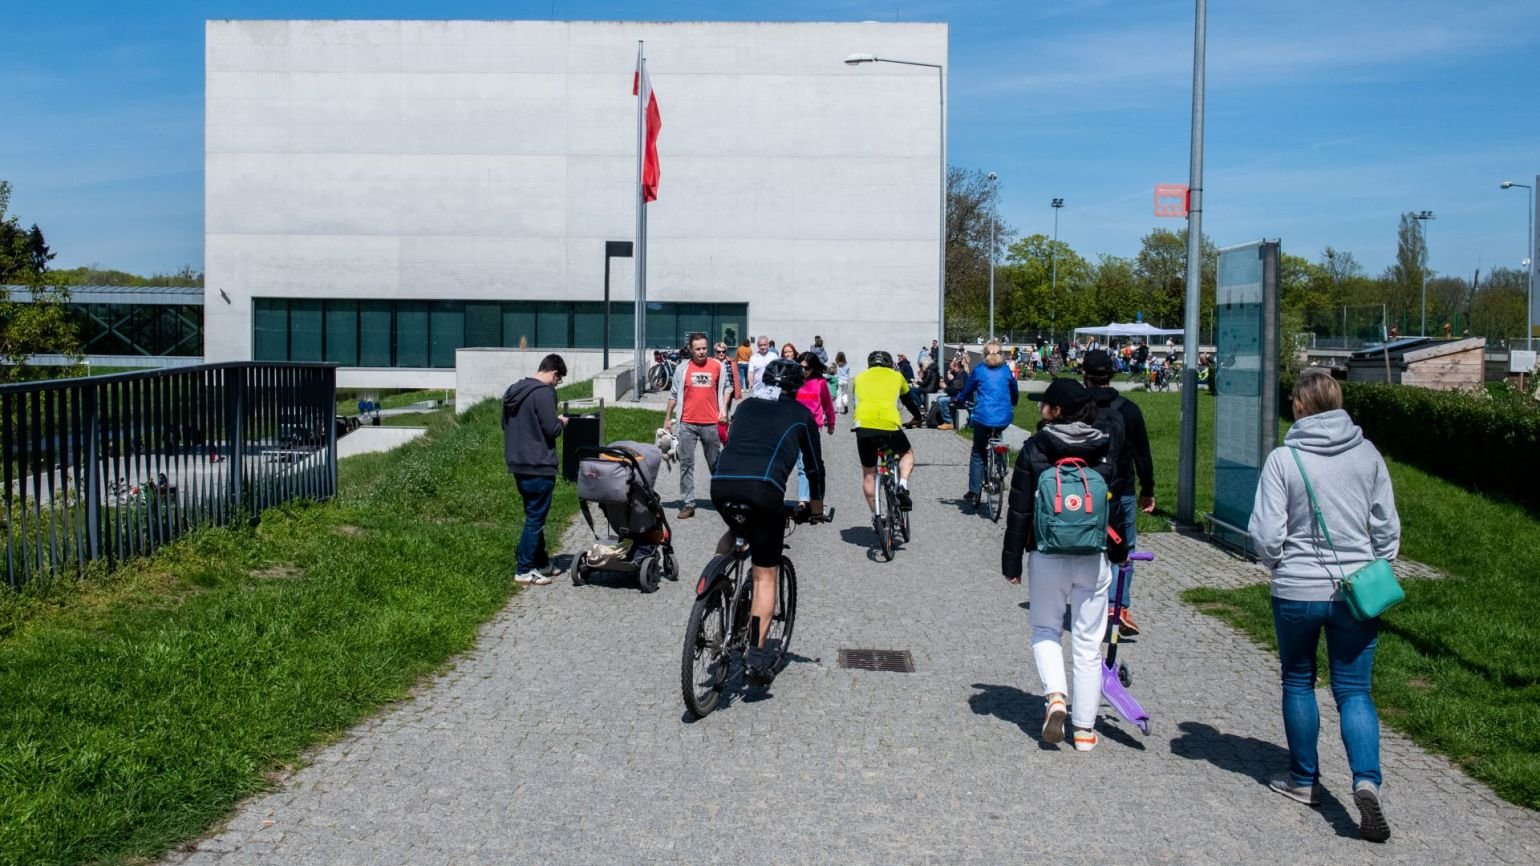 Rowerzyści, ojciec z dzieckiem w wózku i spacerowicze zmierzają w stronę Bramy Poznania